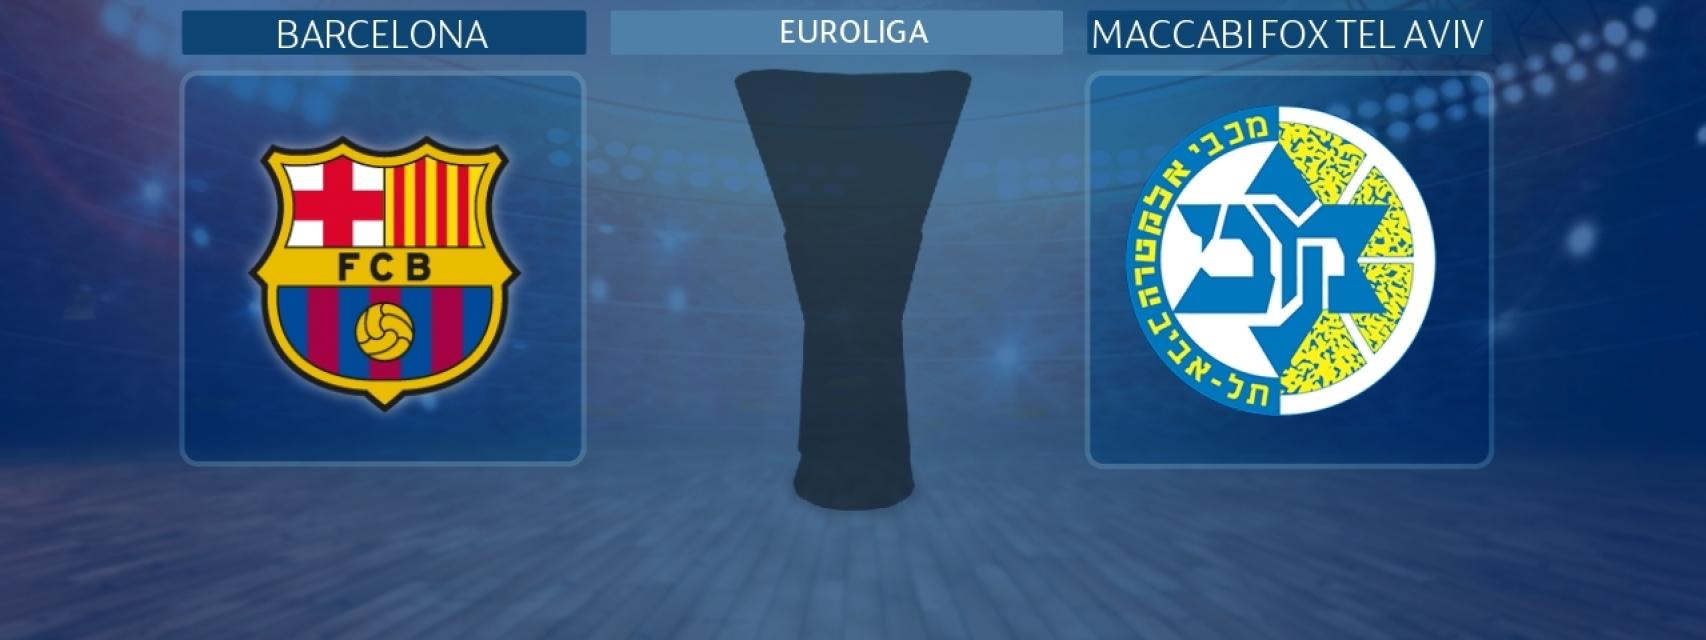 Barcelona - Maccabi Fox Tel Aviv